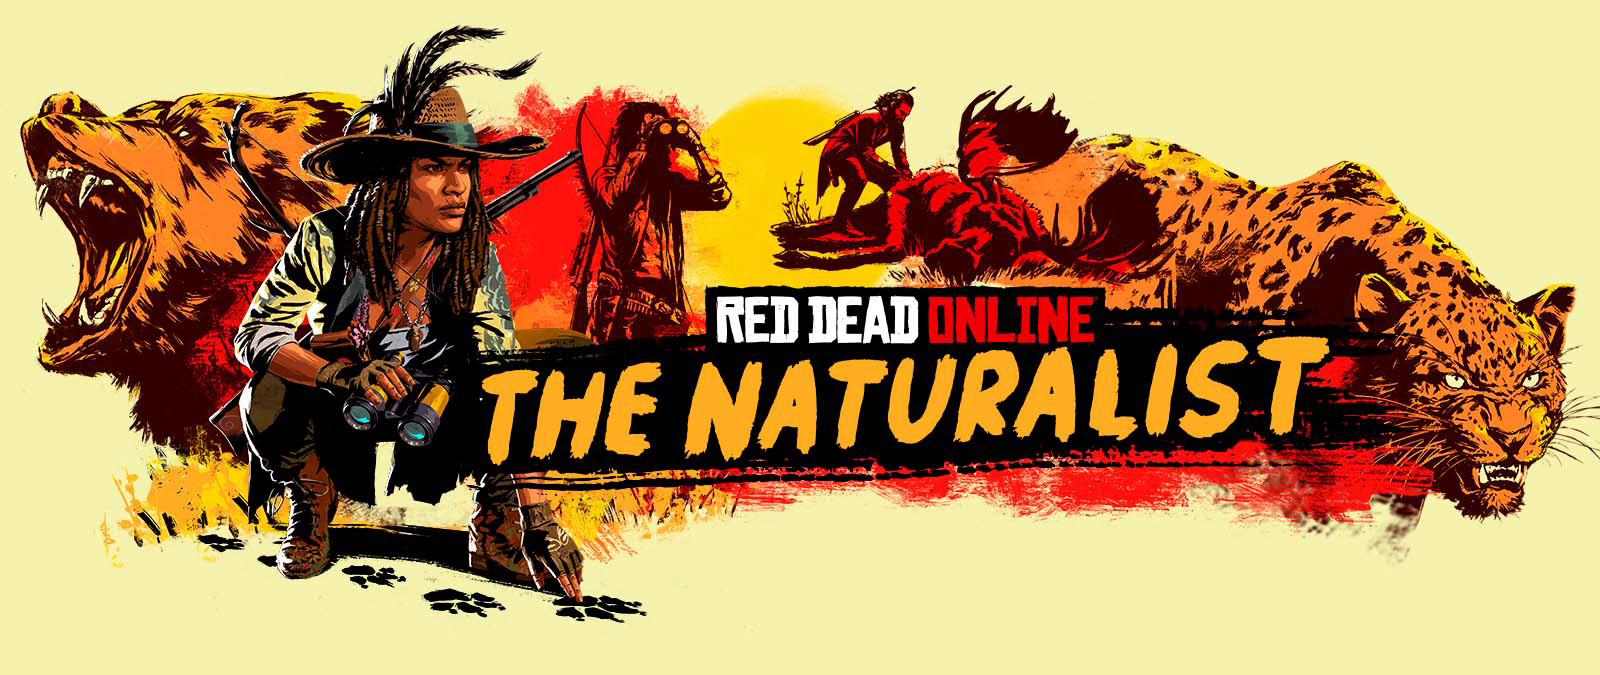 Red Dead 온라인. 자연주의자. 큰 동물을 추적하고 사냥하는 캐릭터들.